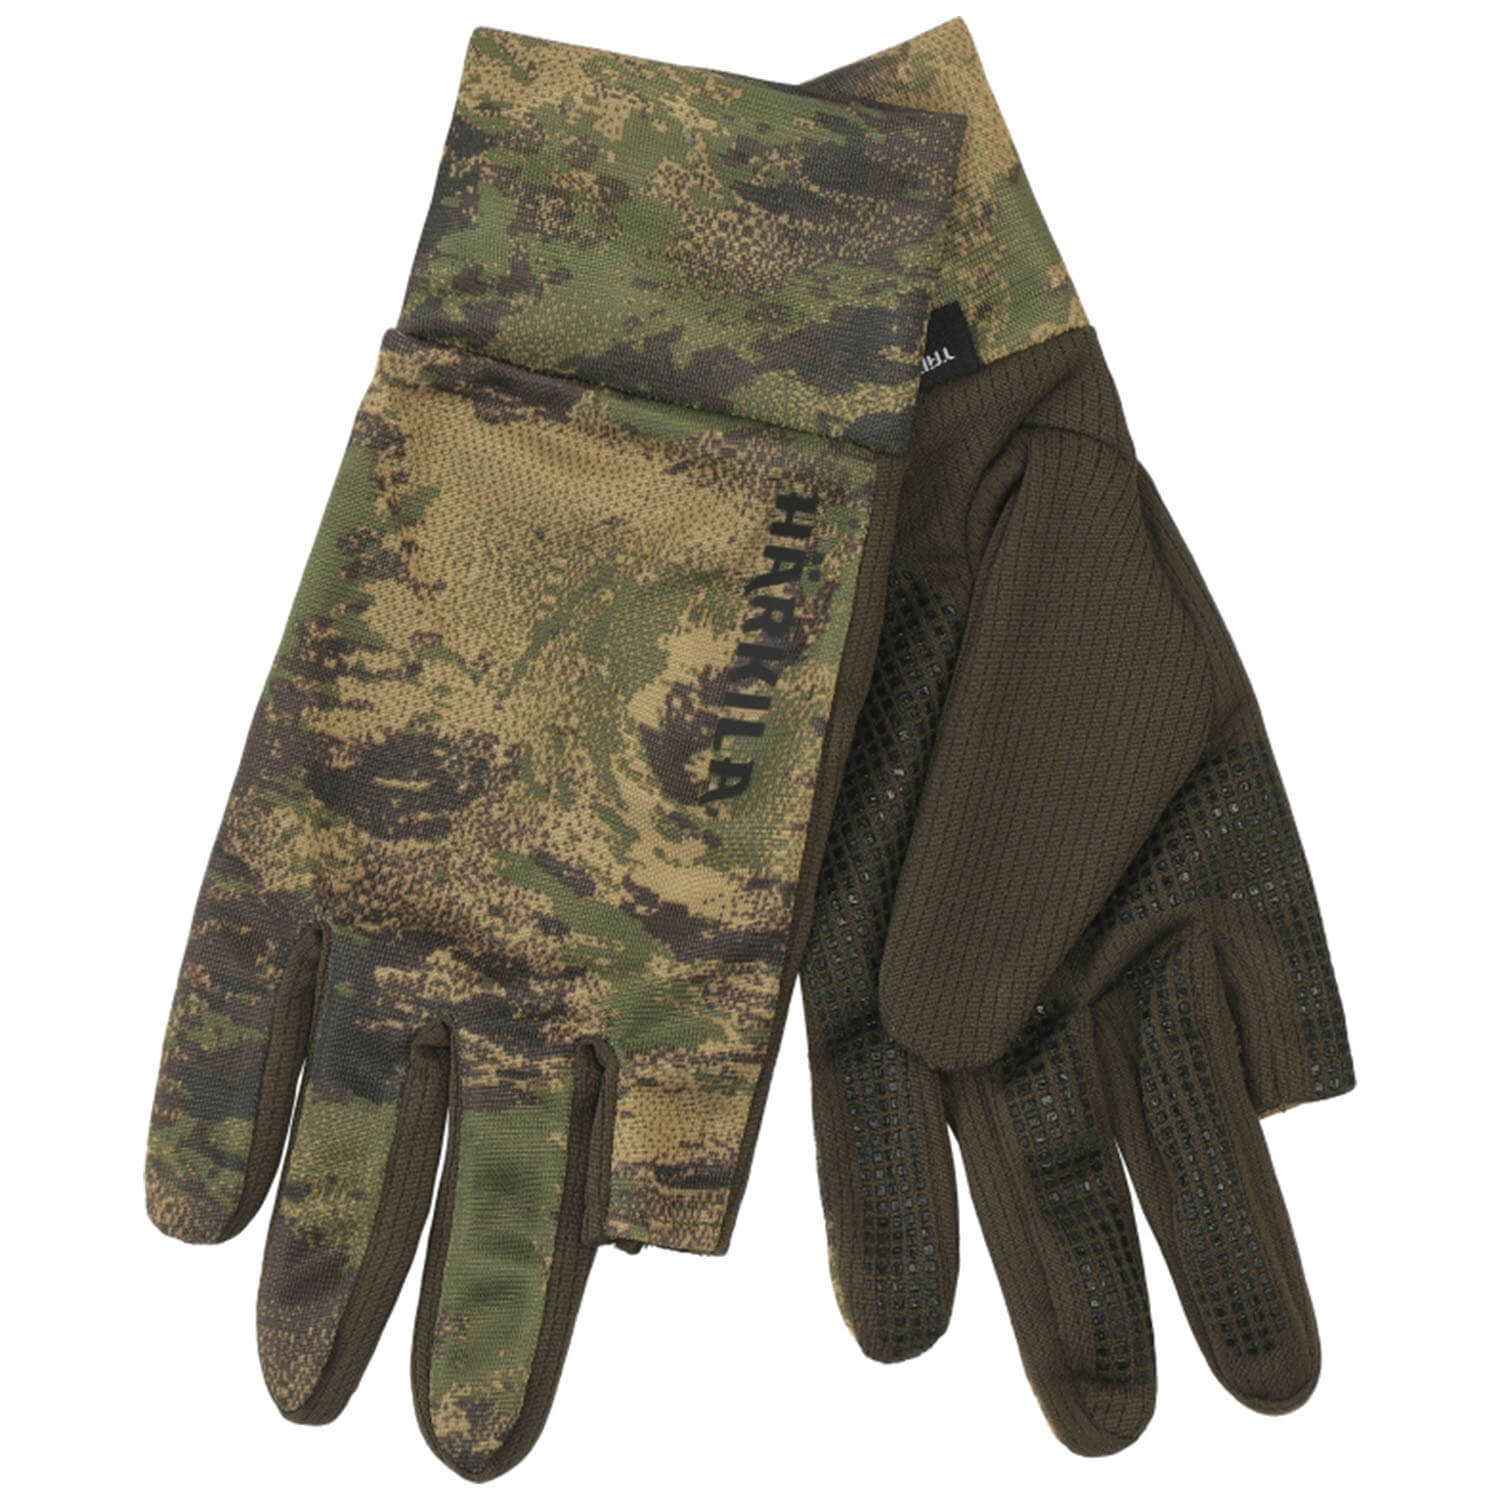 Härkila gloves Deer stalker Camo Mesh - Camouflage Clothing